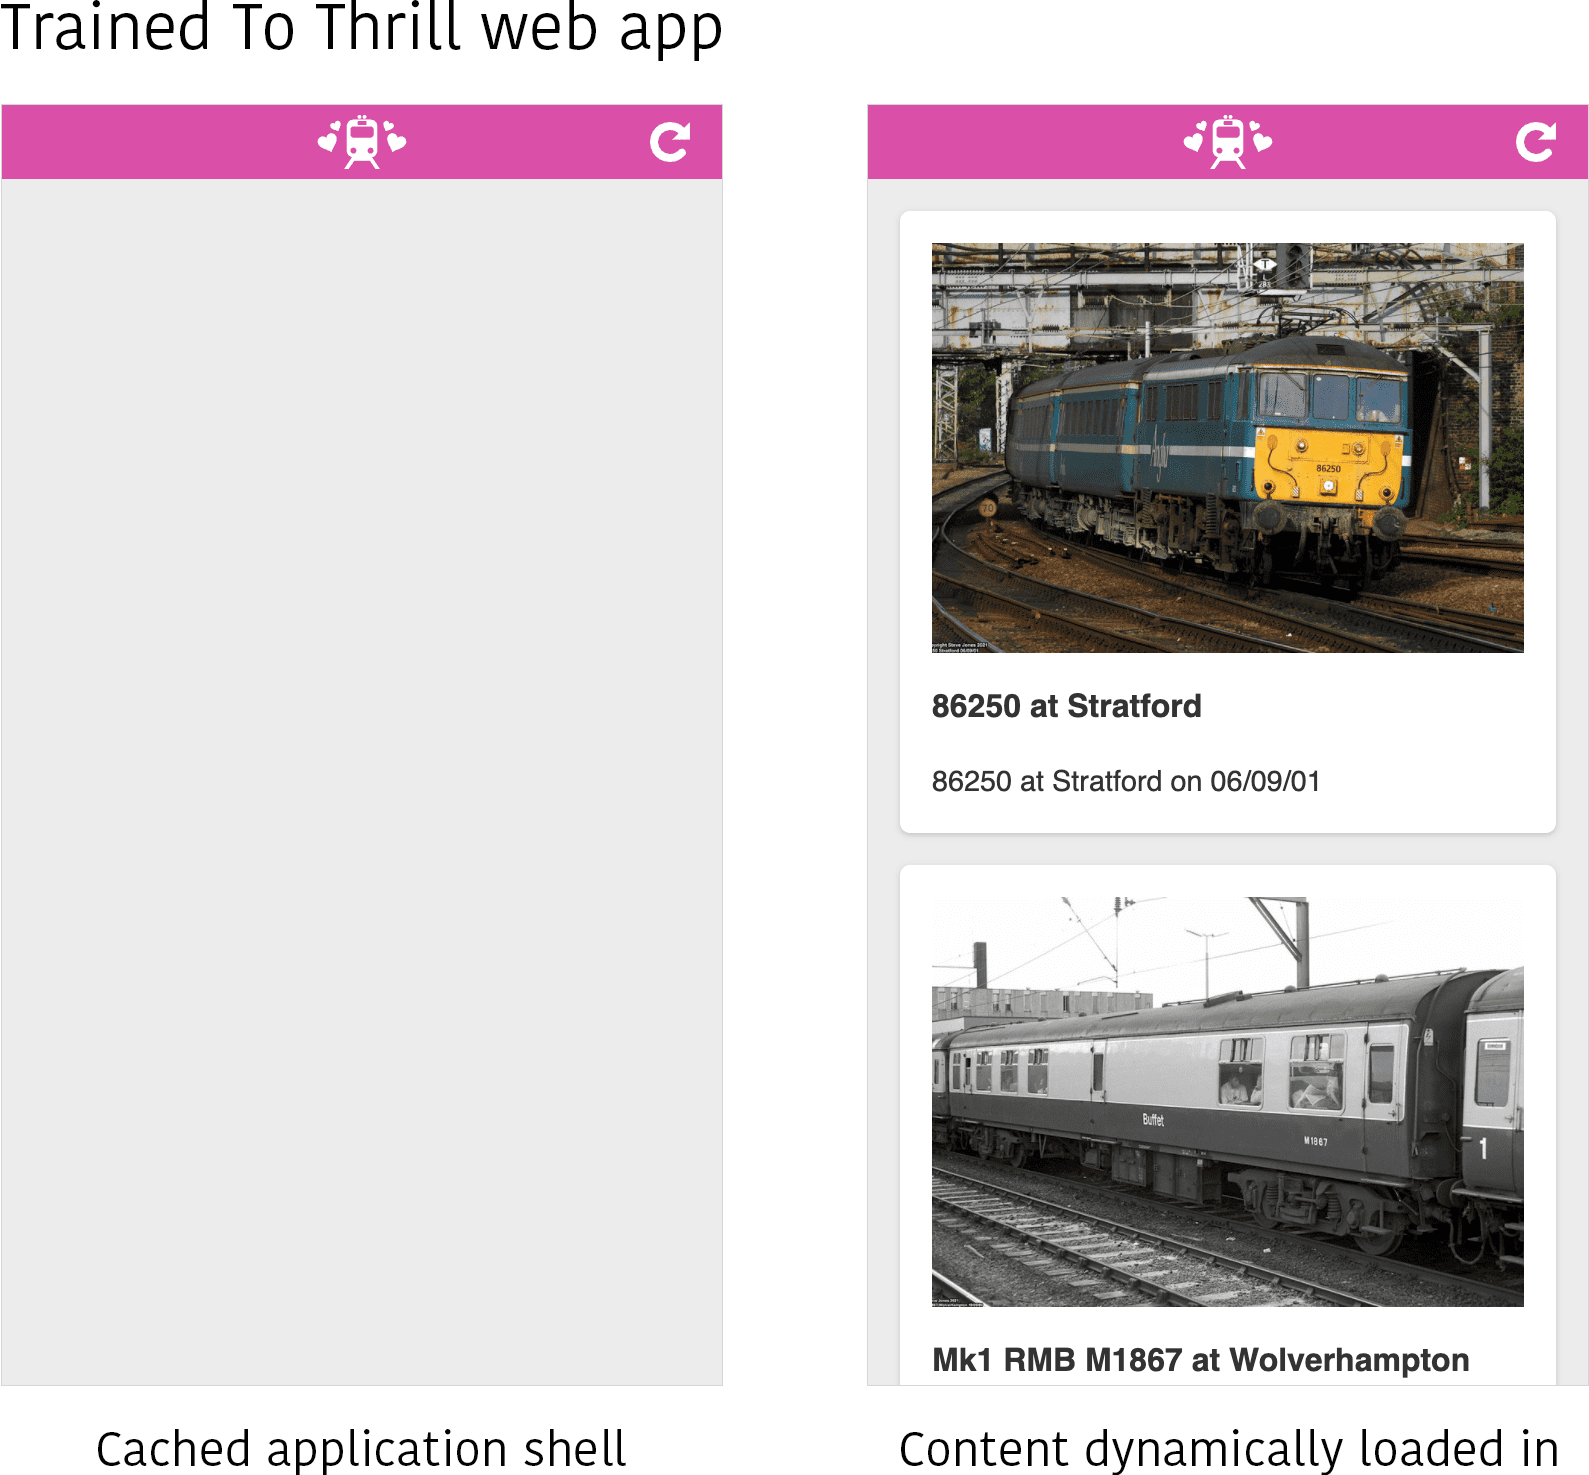 تصویری از برنامه وب Trained to Thrill در دو حالت مختلف. در سمت چپ، فقط پوسته برنامه ذخیره شده در حافظه پنهان قابل مشاهده است، بدون محتوای پر شده. در سمت راست، محتوا (چند تصویر از برخی قطارها) به صورت پویا در قسمت محتوای پوسته برنامه بارگذاری می شود.